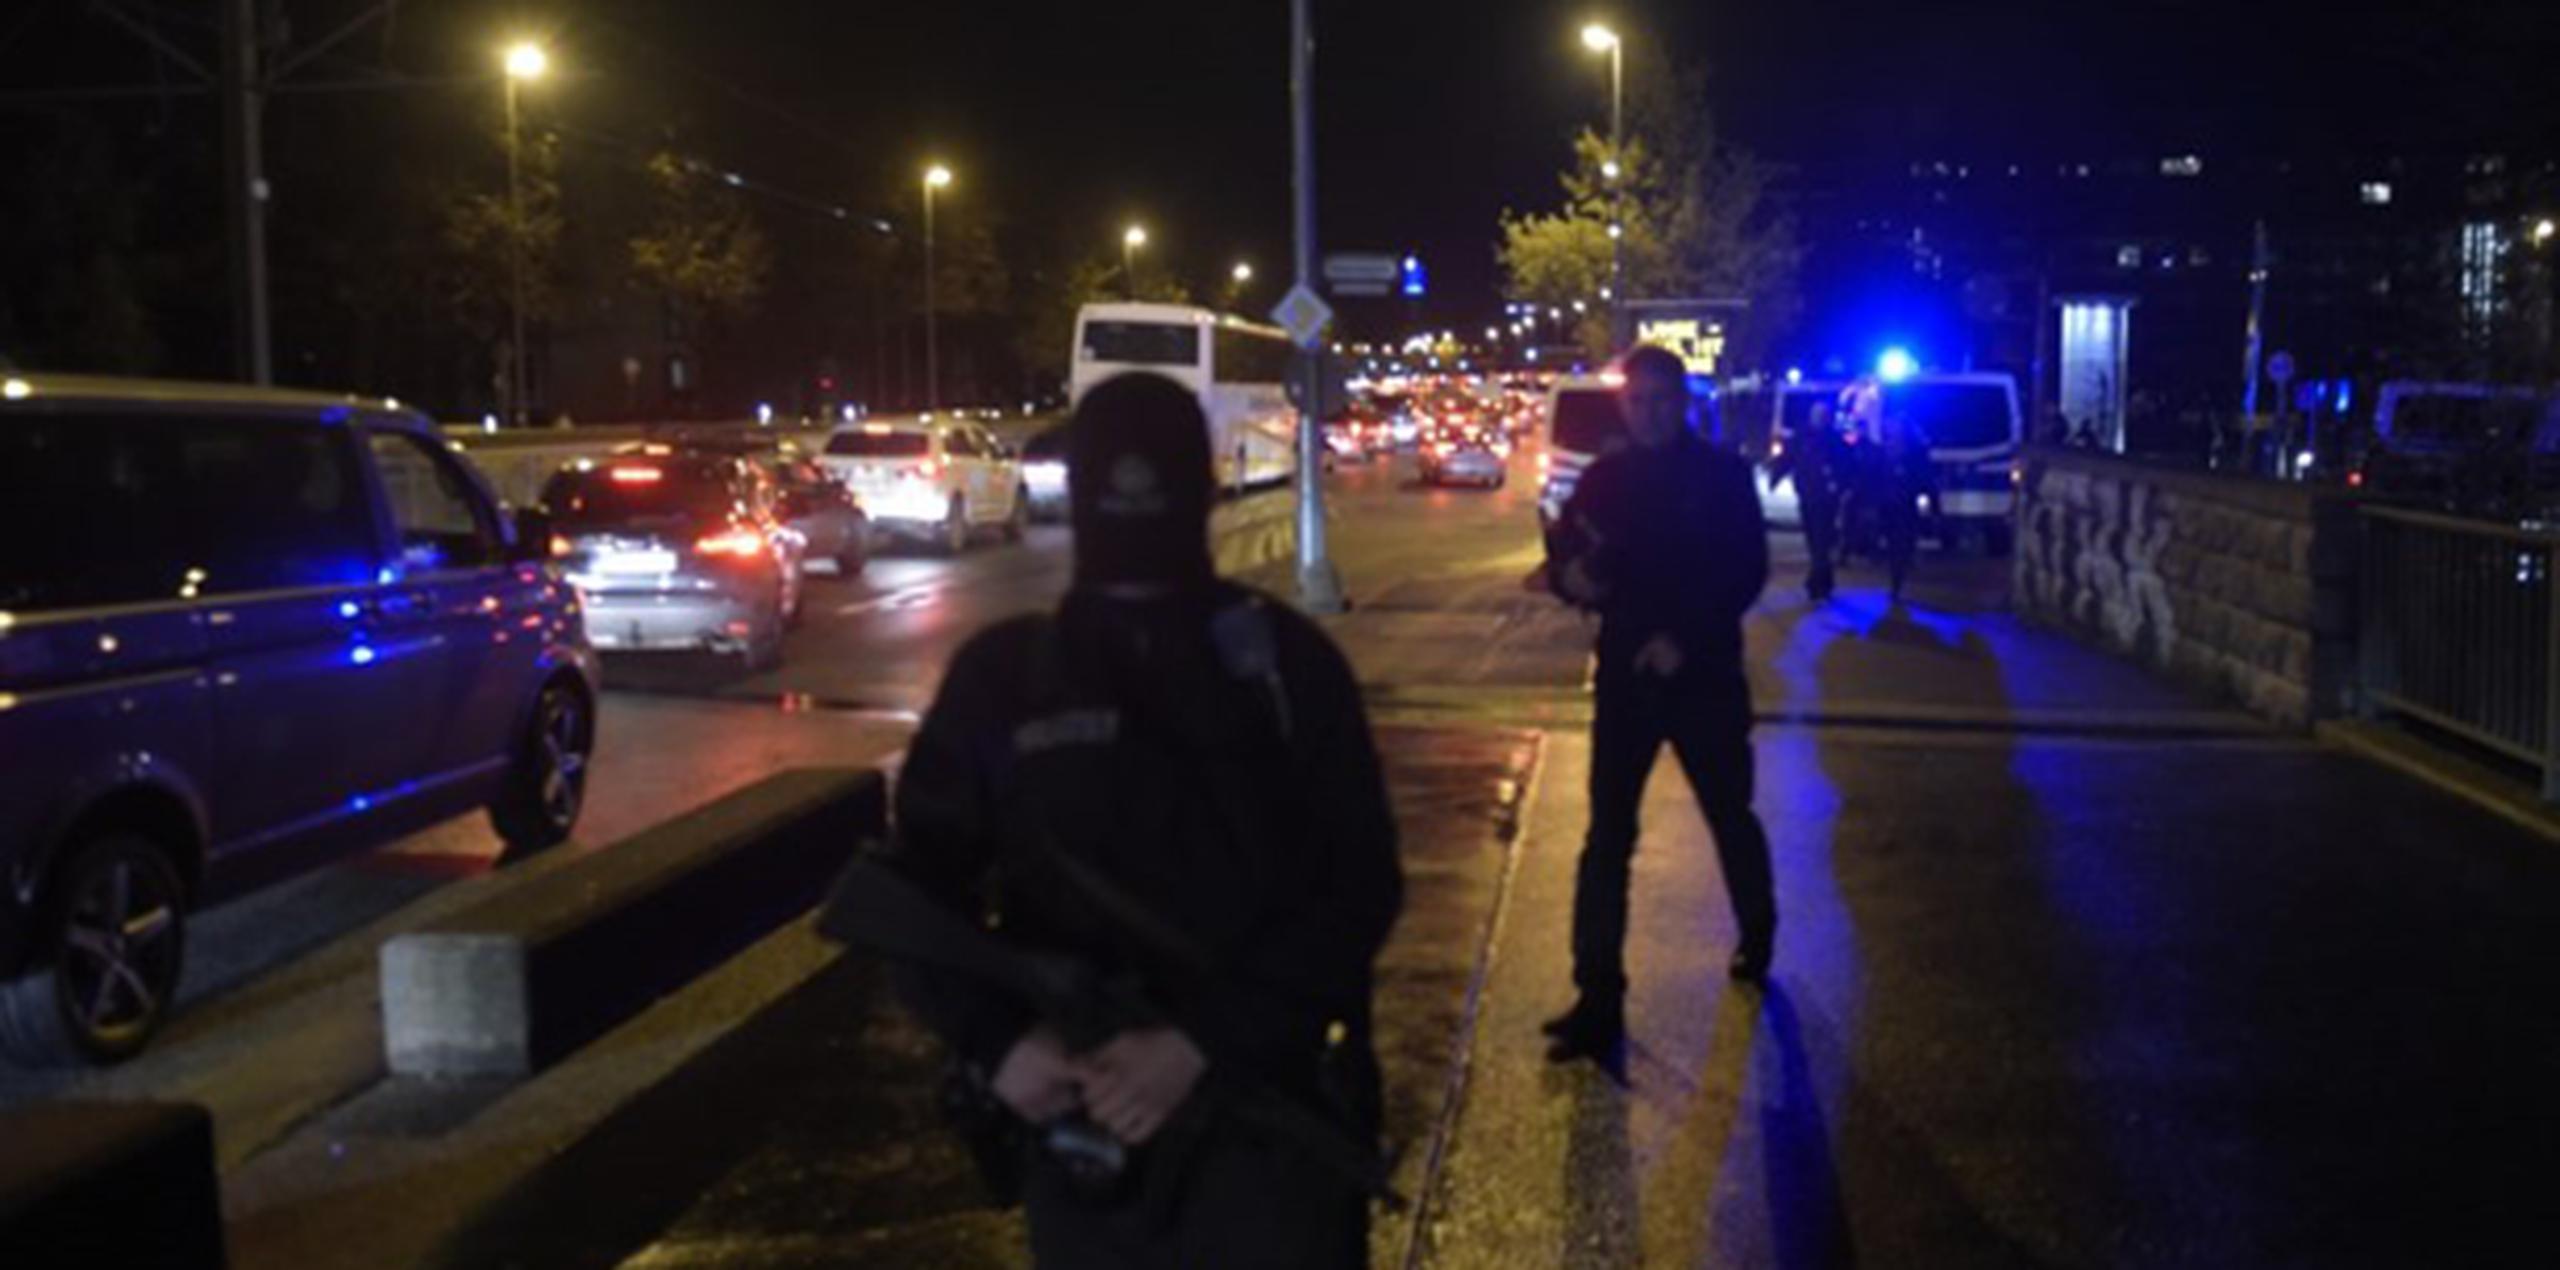 Se trata del segundo encuentro amistoso entre selecciones europeas suspendido tras los atentados de París del viernes. (AFP PHOTO / ODD ANDERSEN)